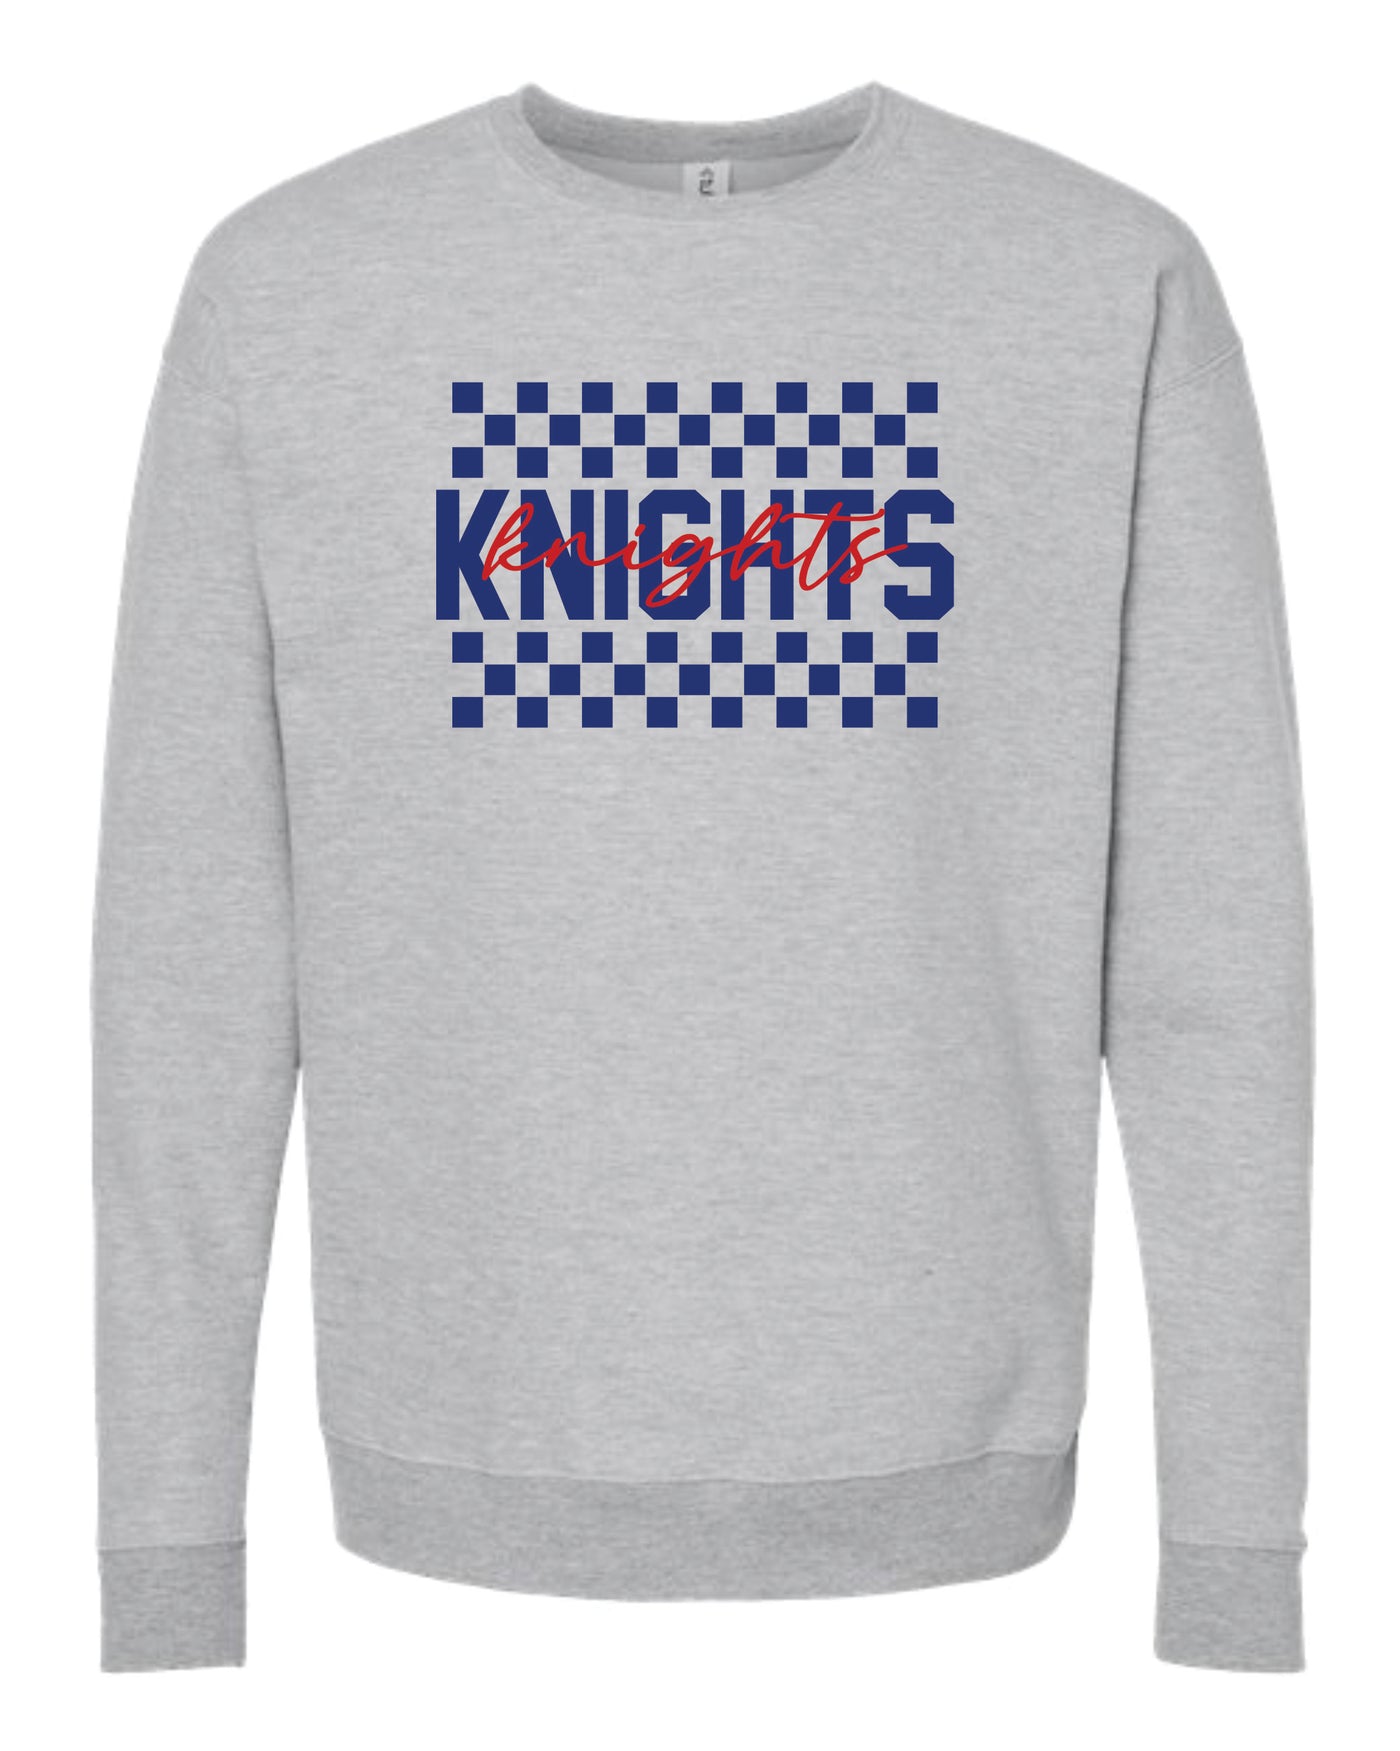 Checkered School Spirit Crewneck Sweatshirt